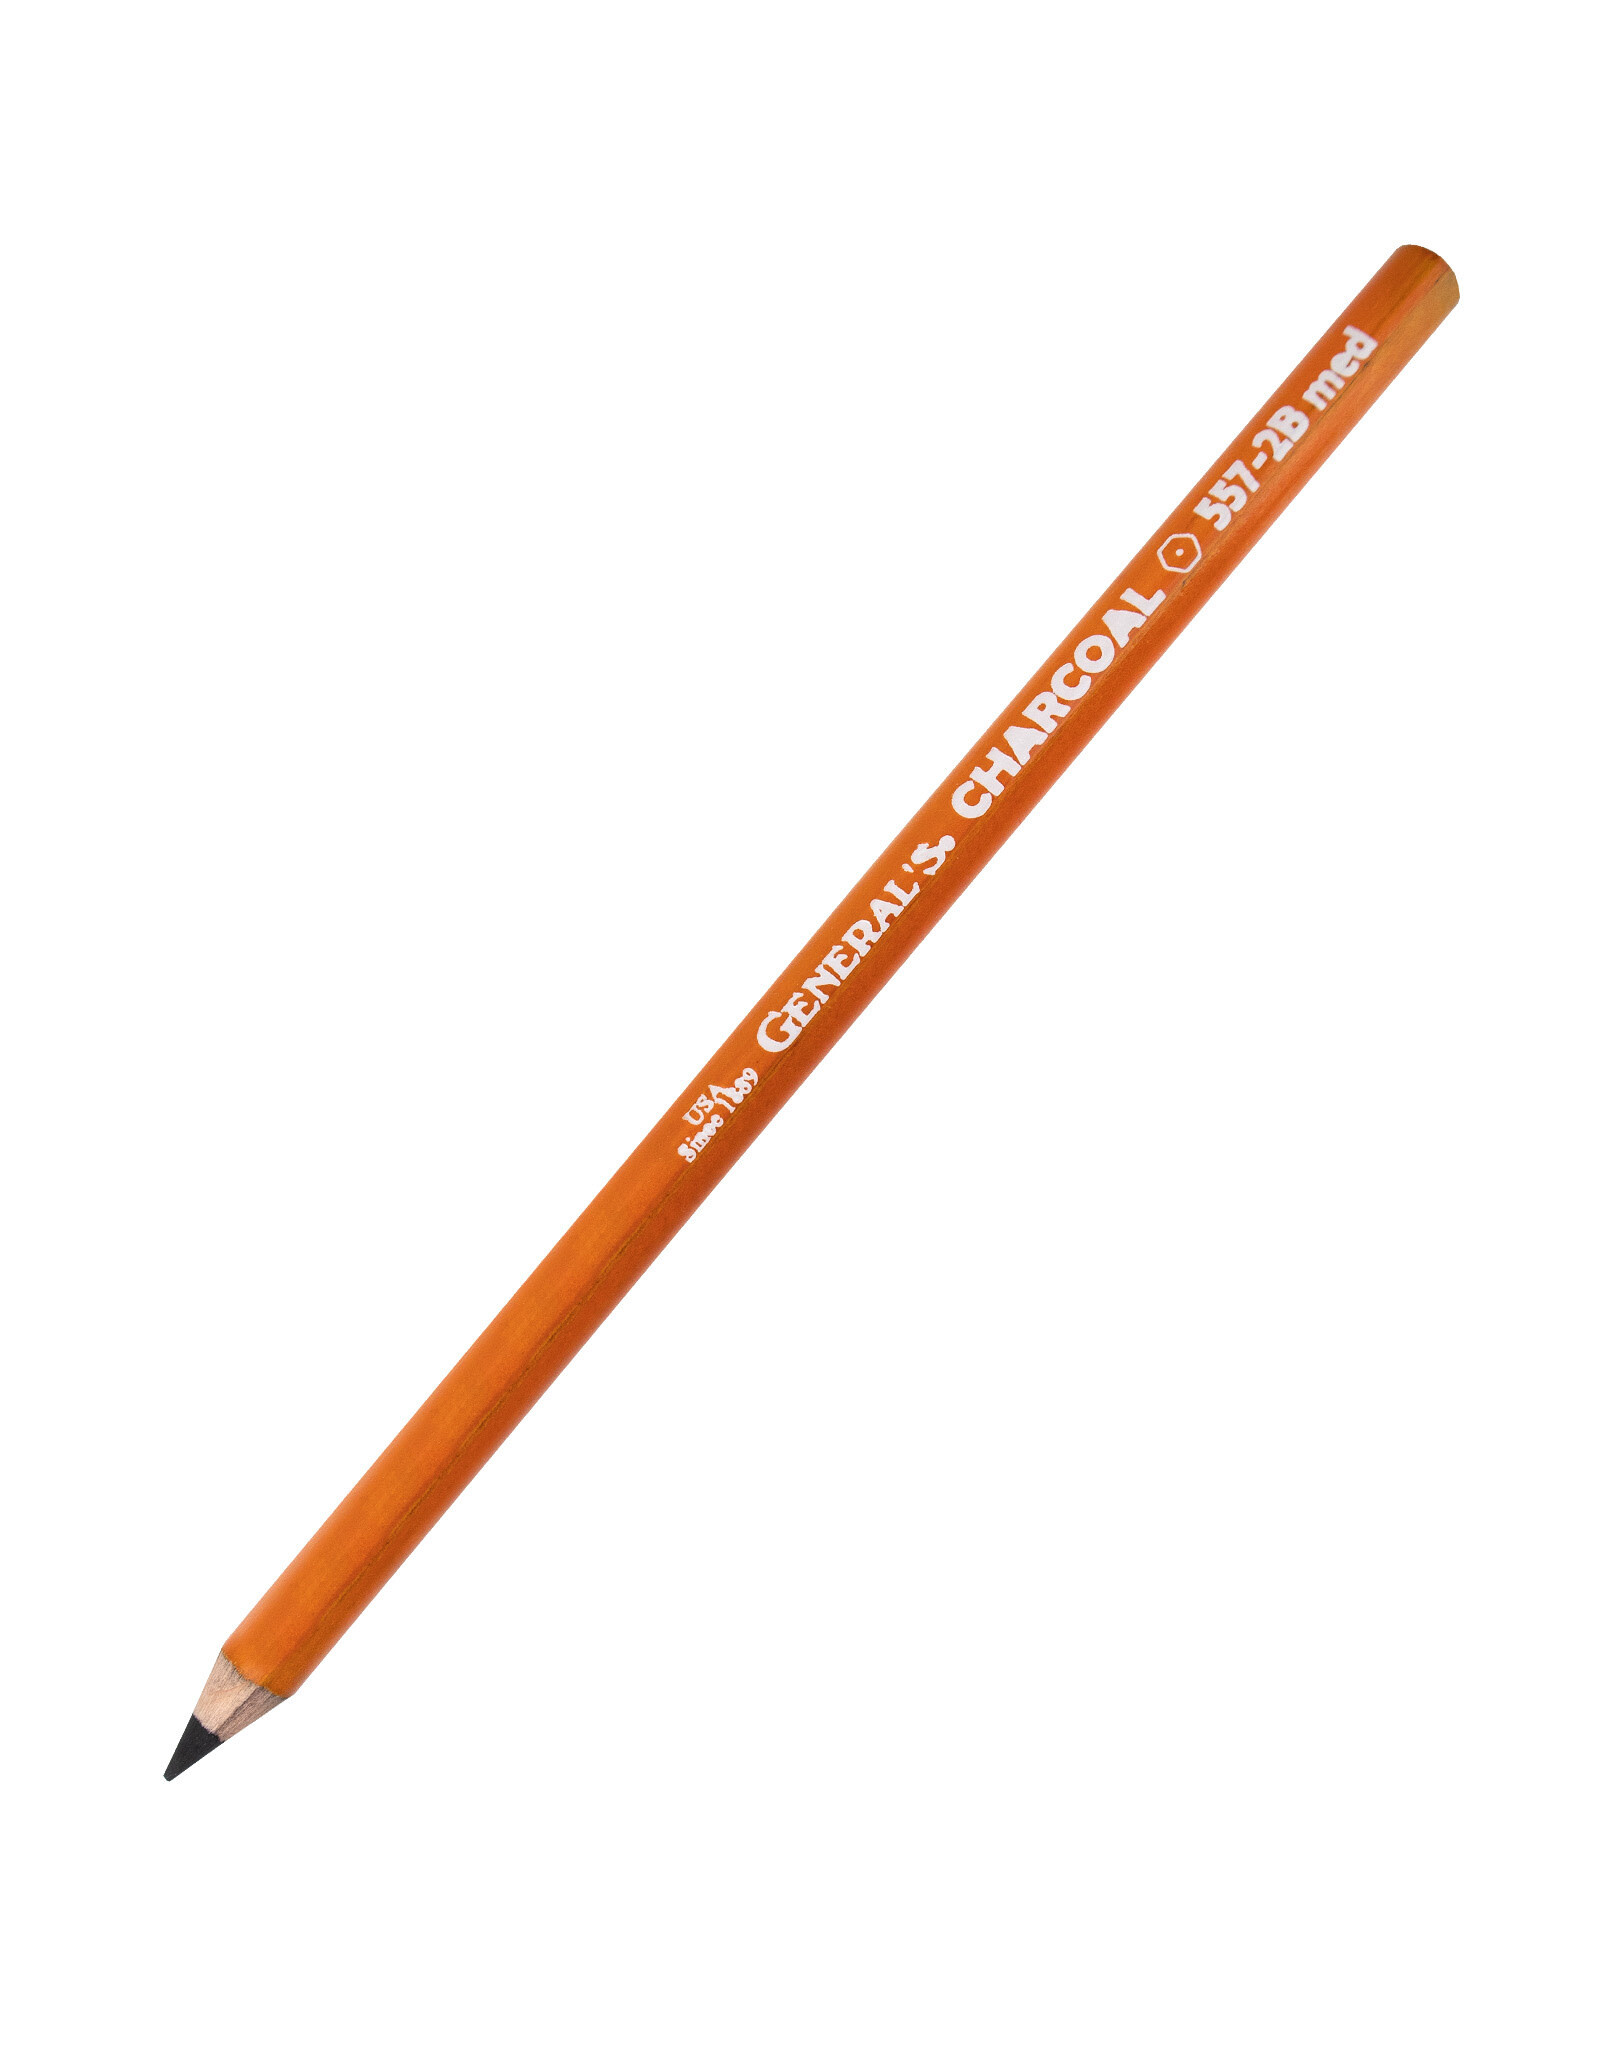 General Pencil General Pencil The Original Charcoal Pencil 2B Medium